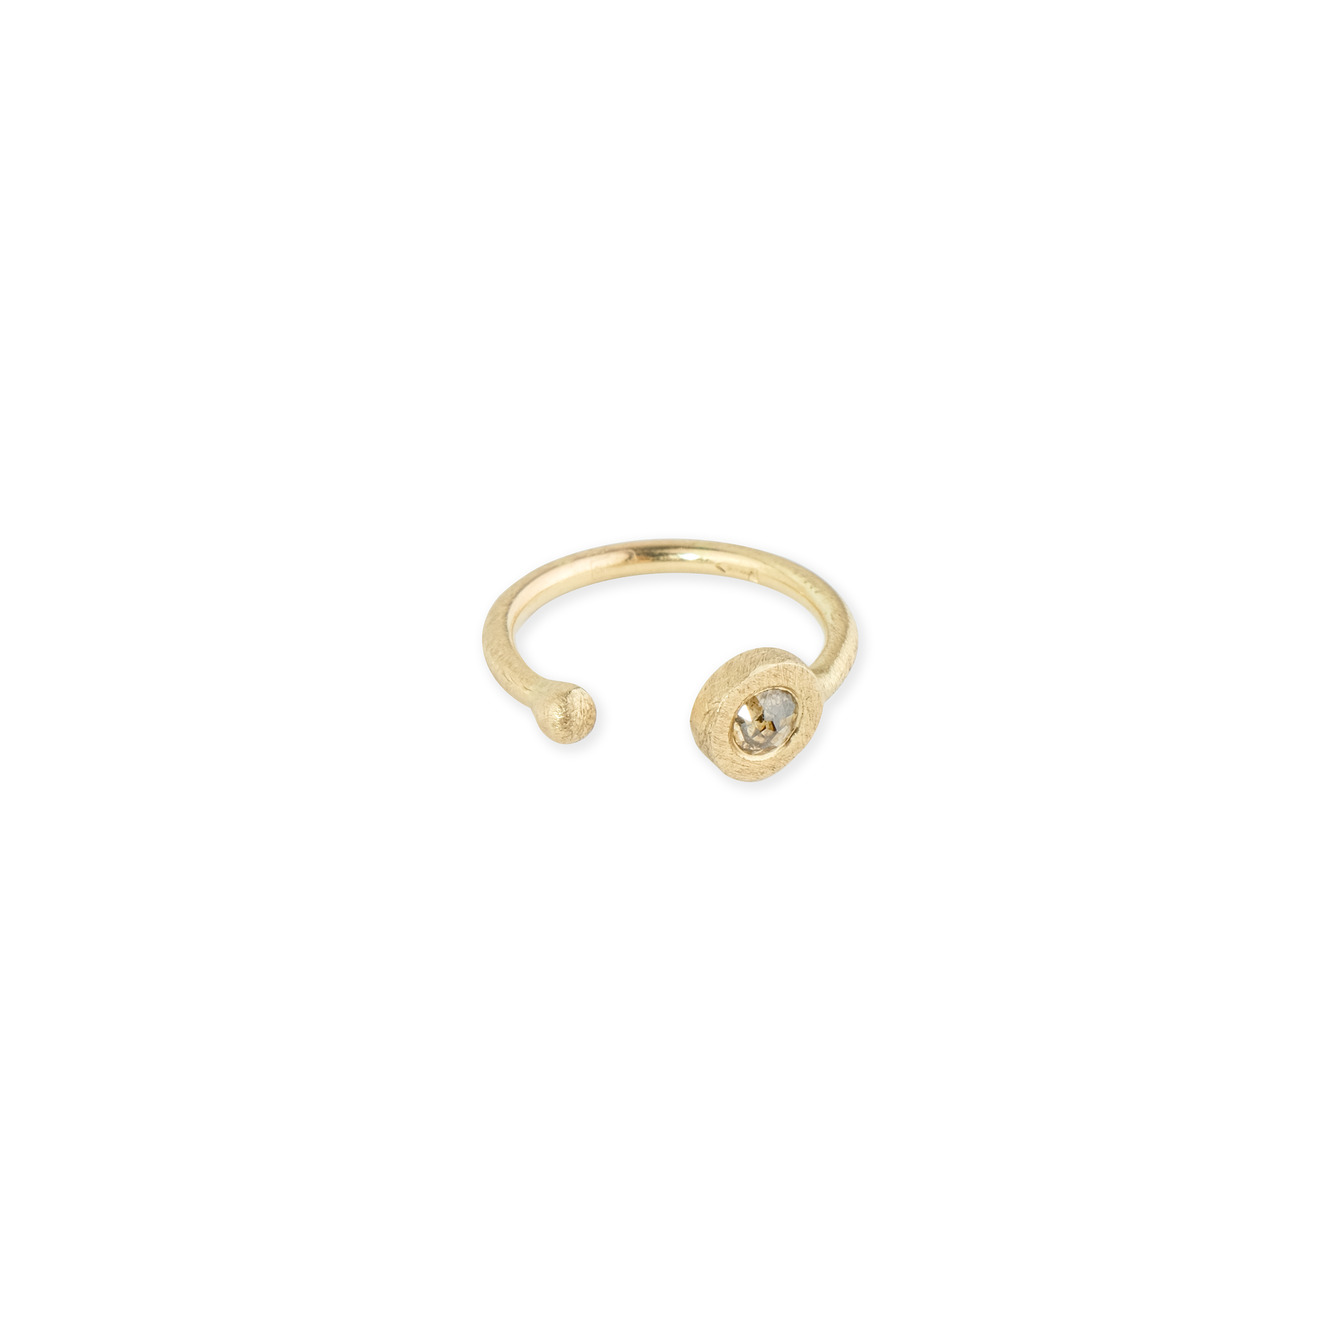 The EGO Кольцо на фалангу Fragile rose из золота со вставкой из бриллиантов